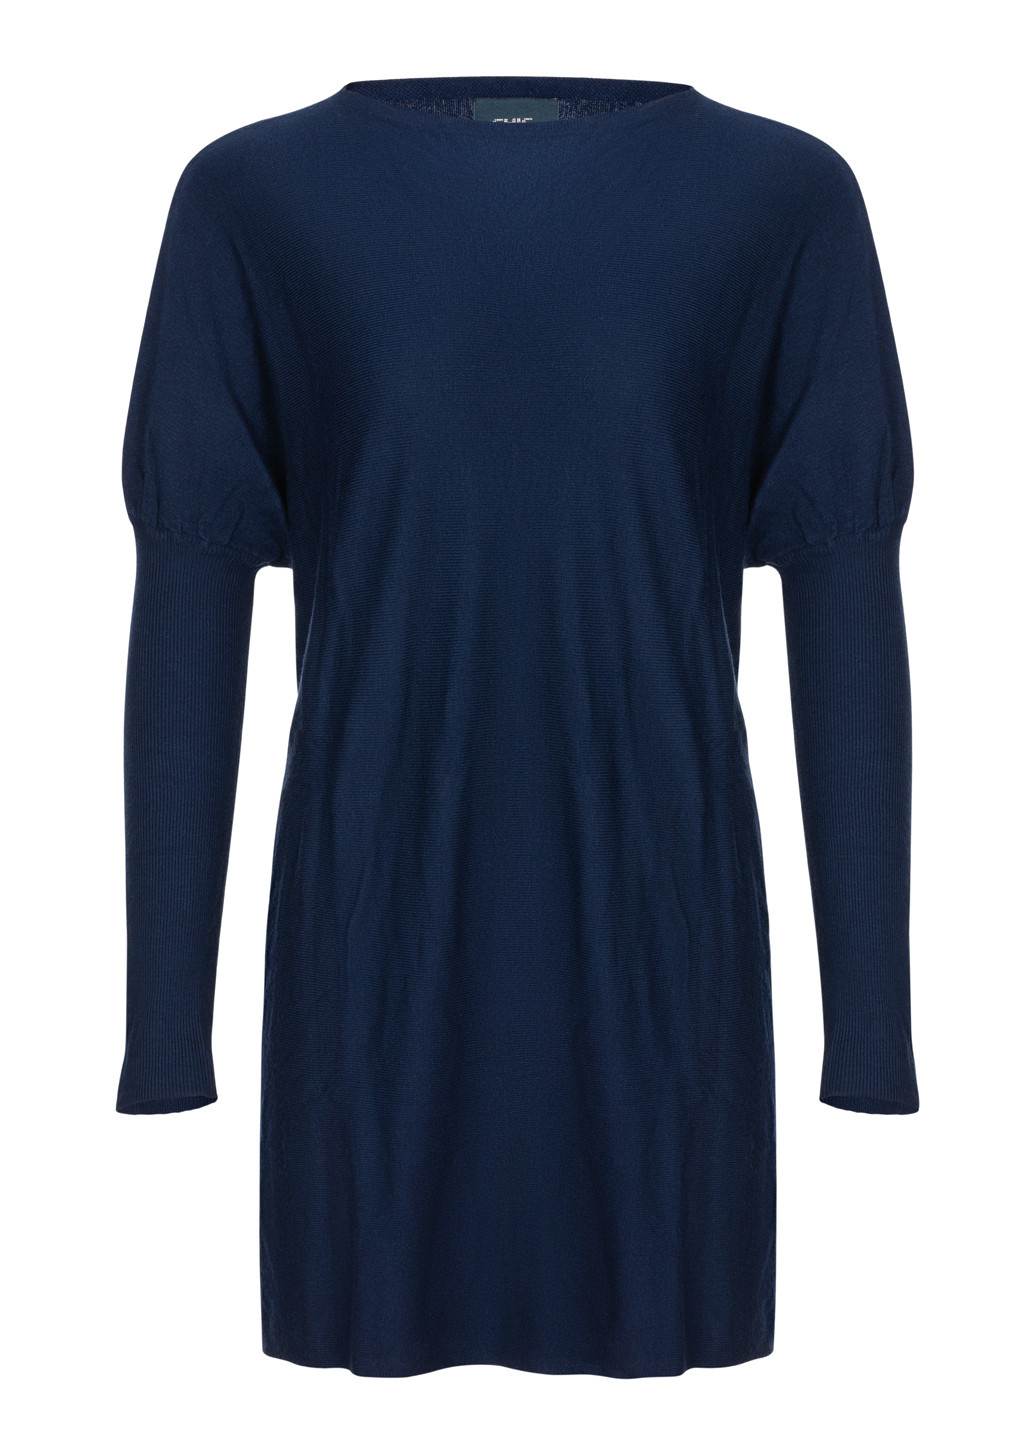 Синий демисезонный женский удлиненный свитер туника джемпер Tantra